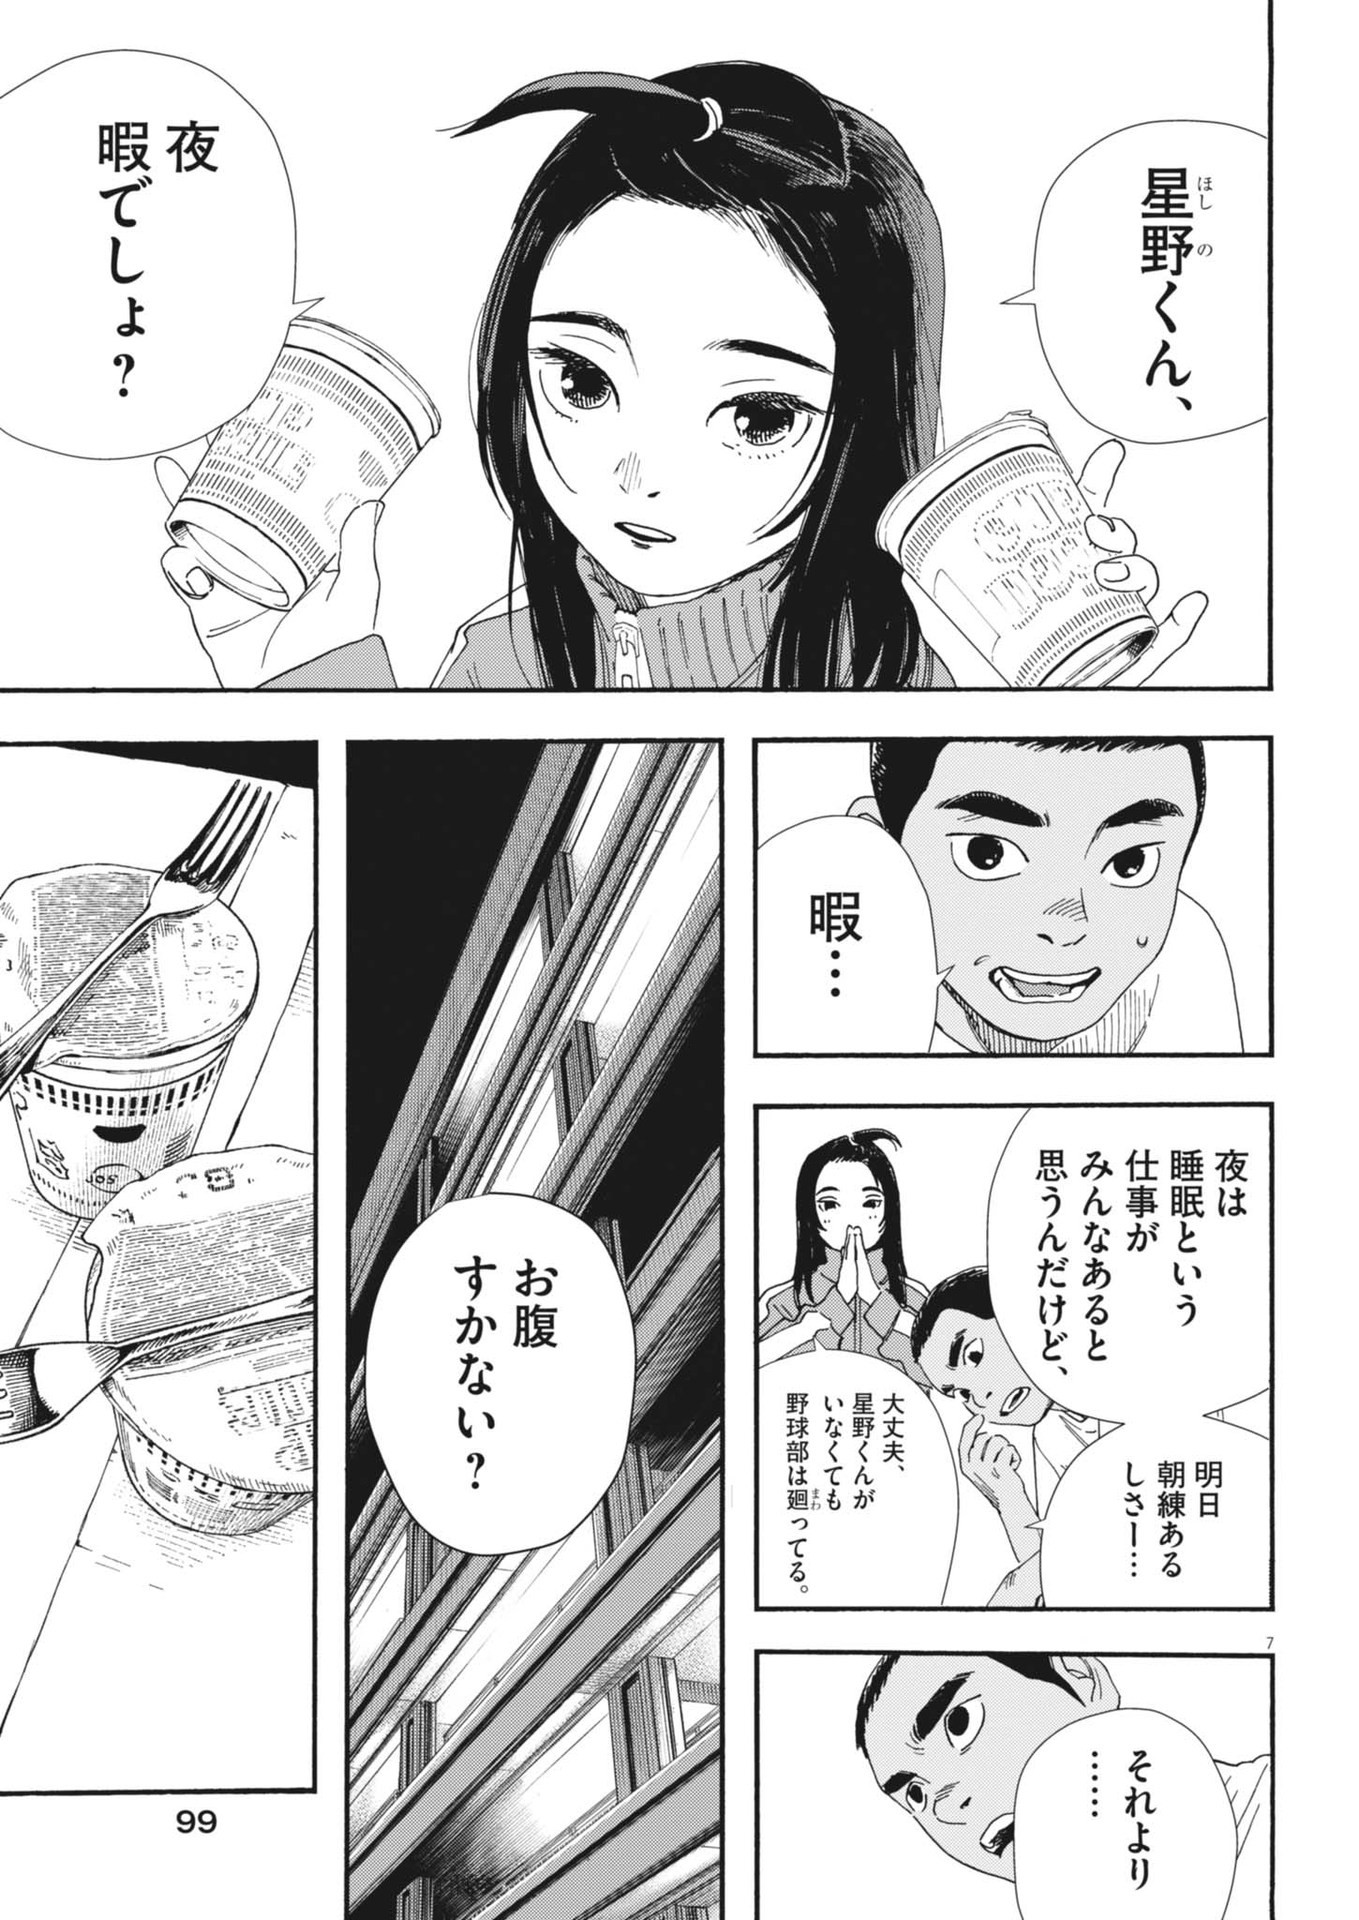 Hoshino-kun, Shitagatte! - Chapter 8 - Page 7